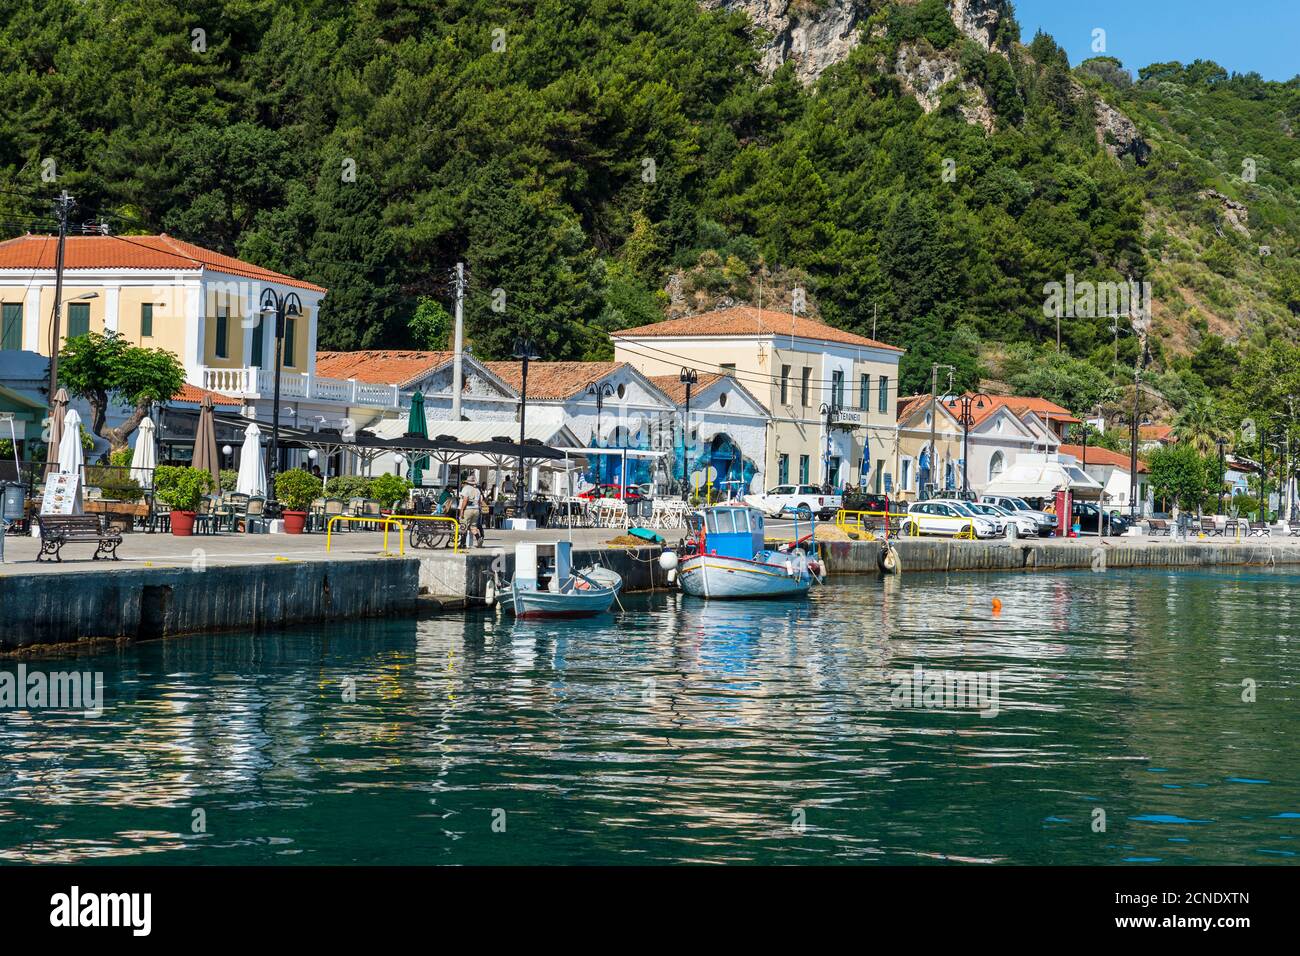 Le port de Karlovasi, Samos, les îles grecques, la Grèce, l'Europe Banque D'Images